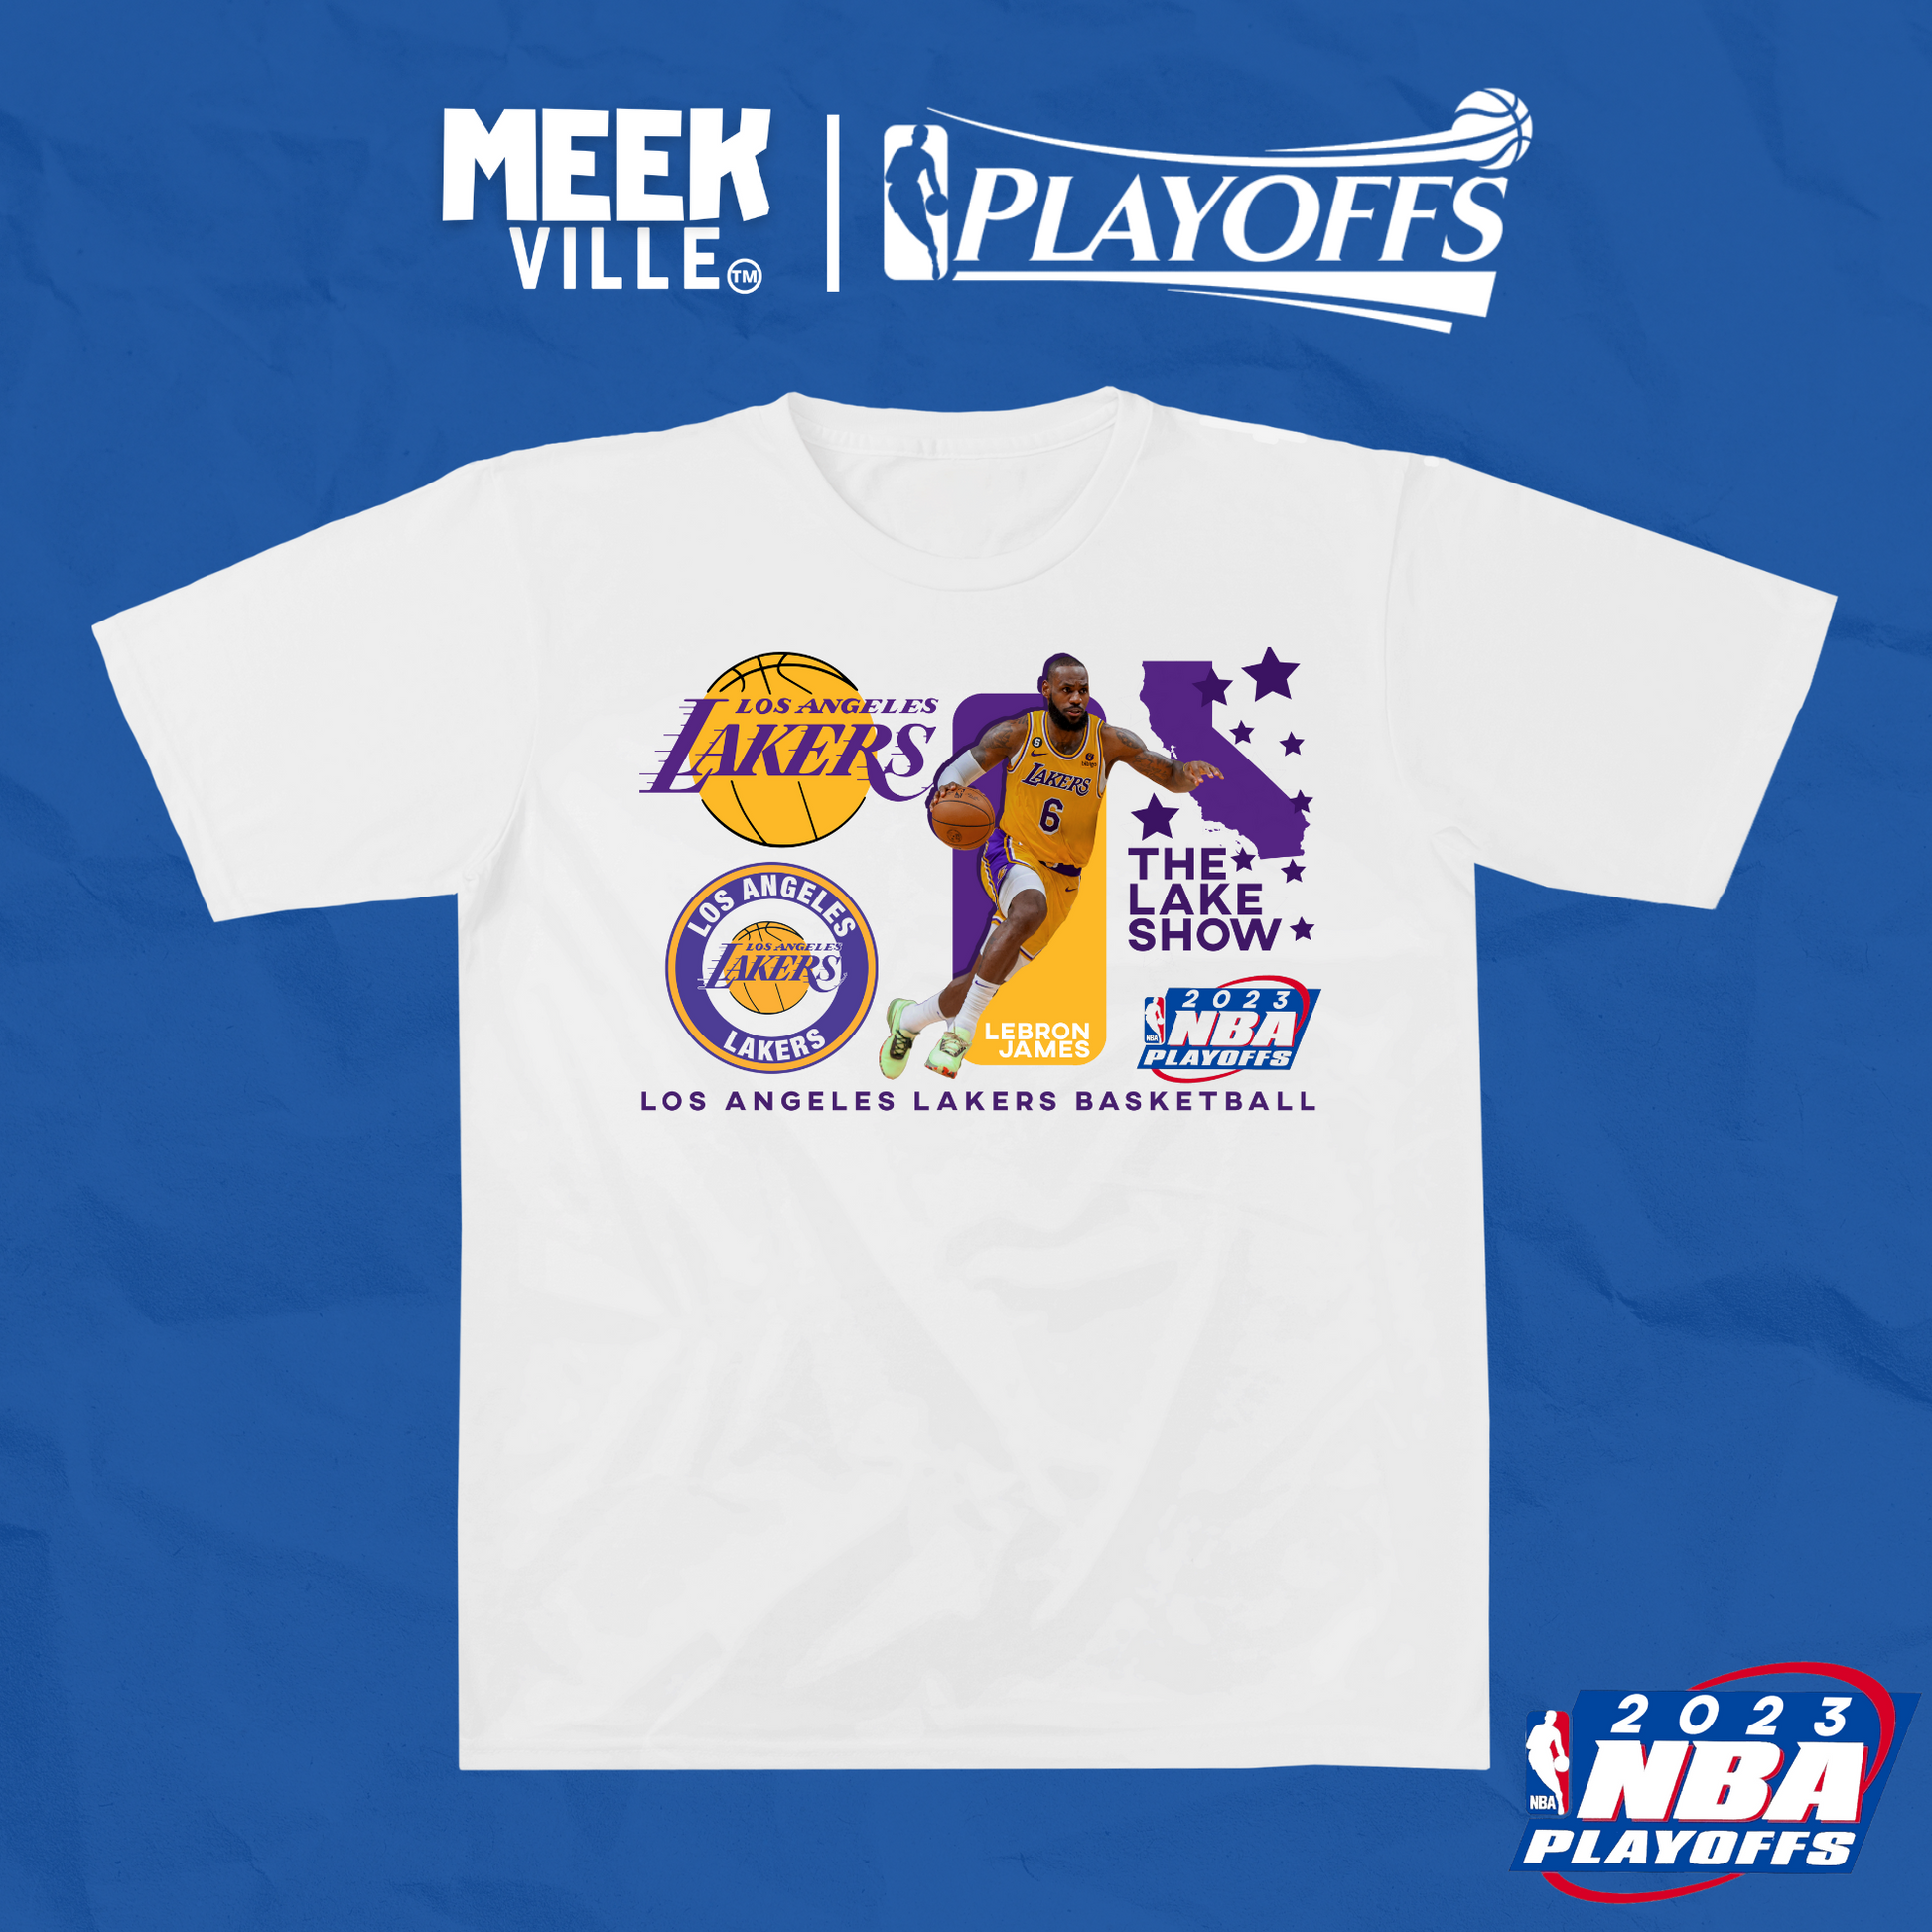 Lakers Basketball Playoffs - Basketball T-shirts